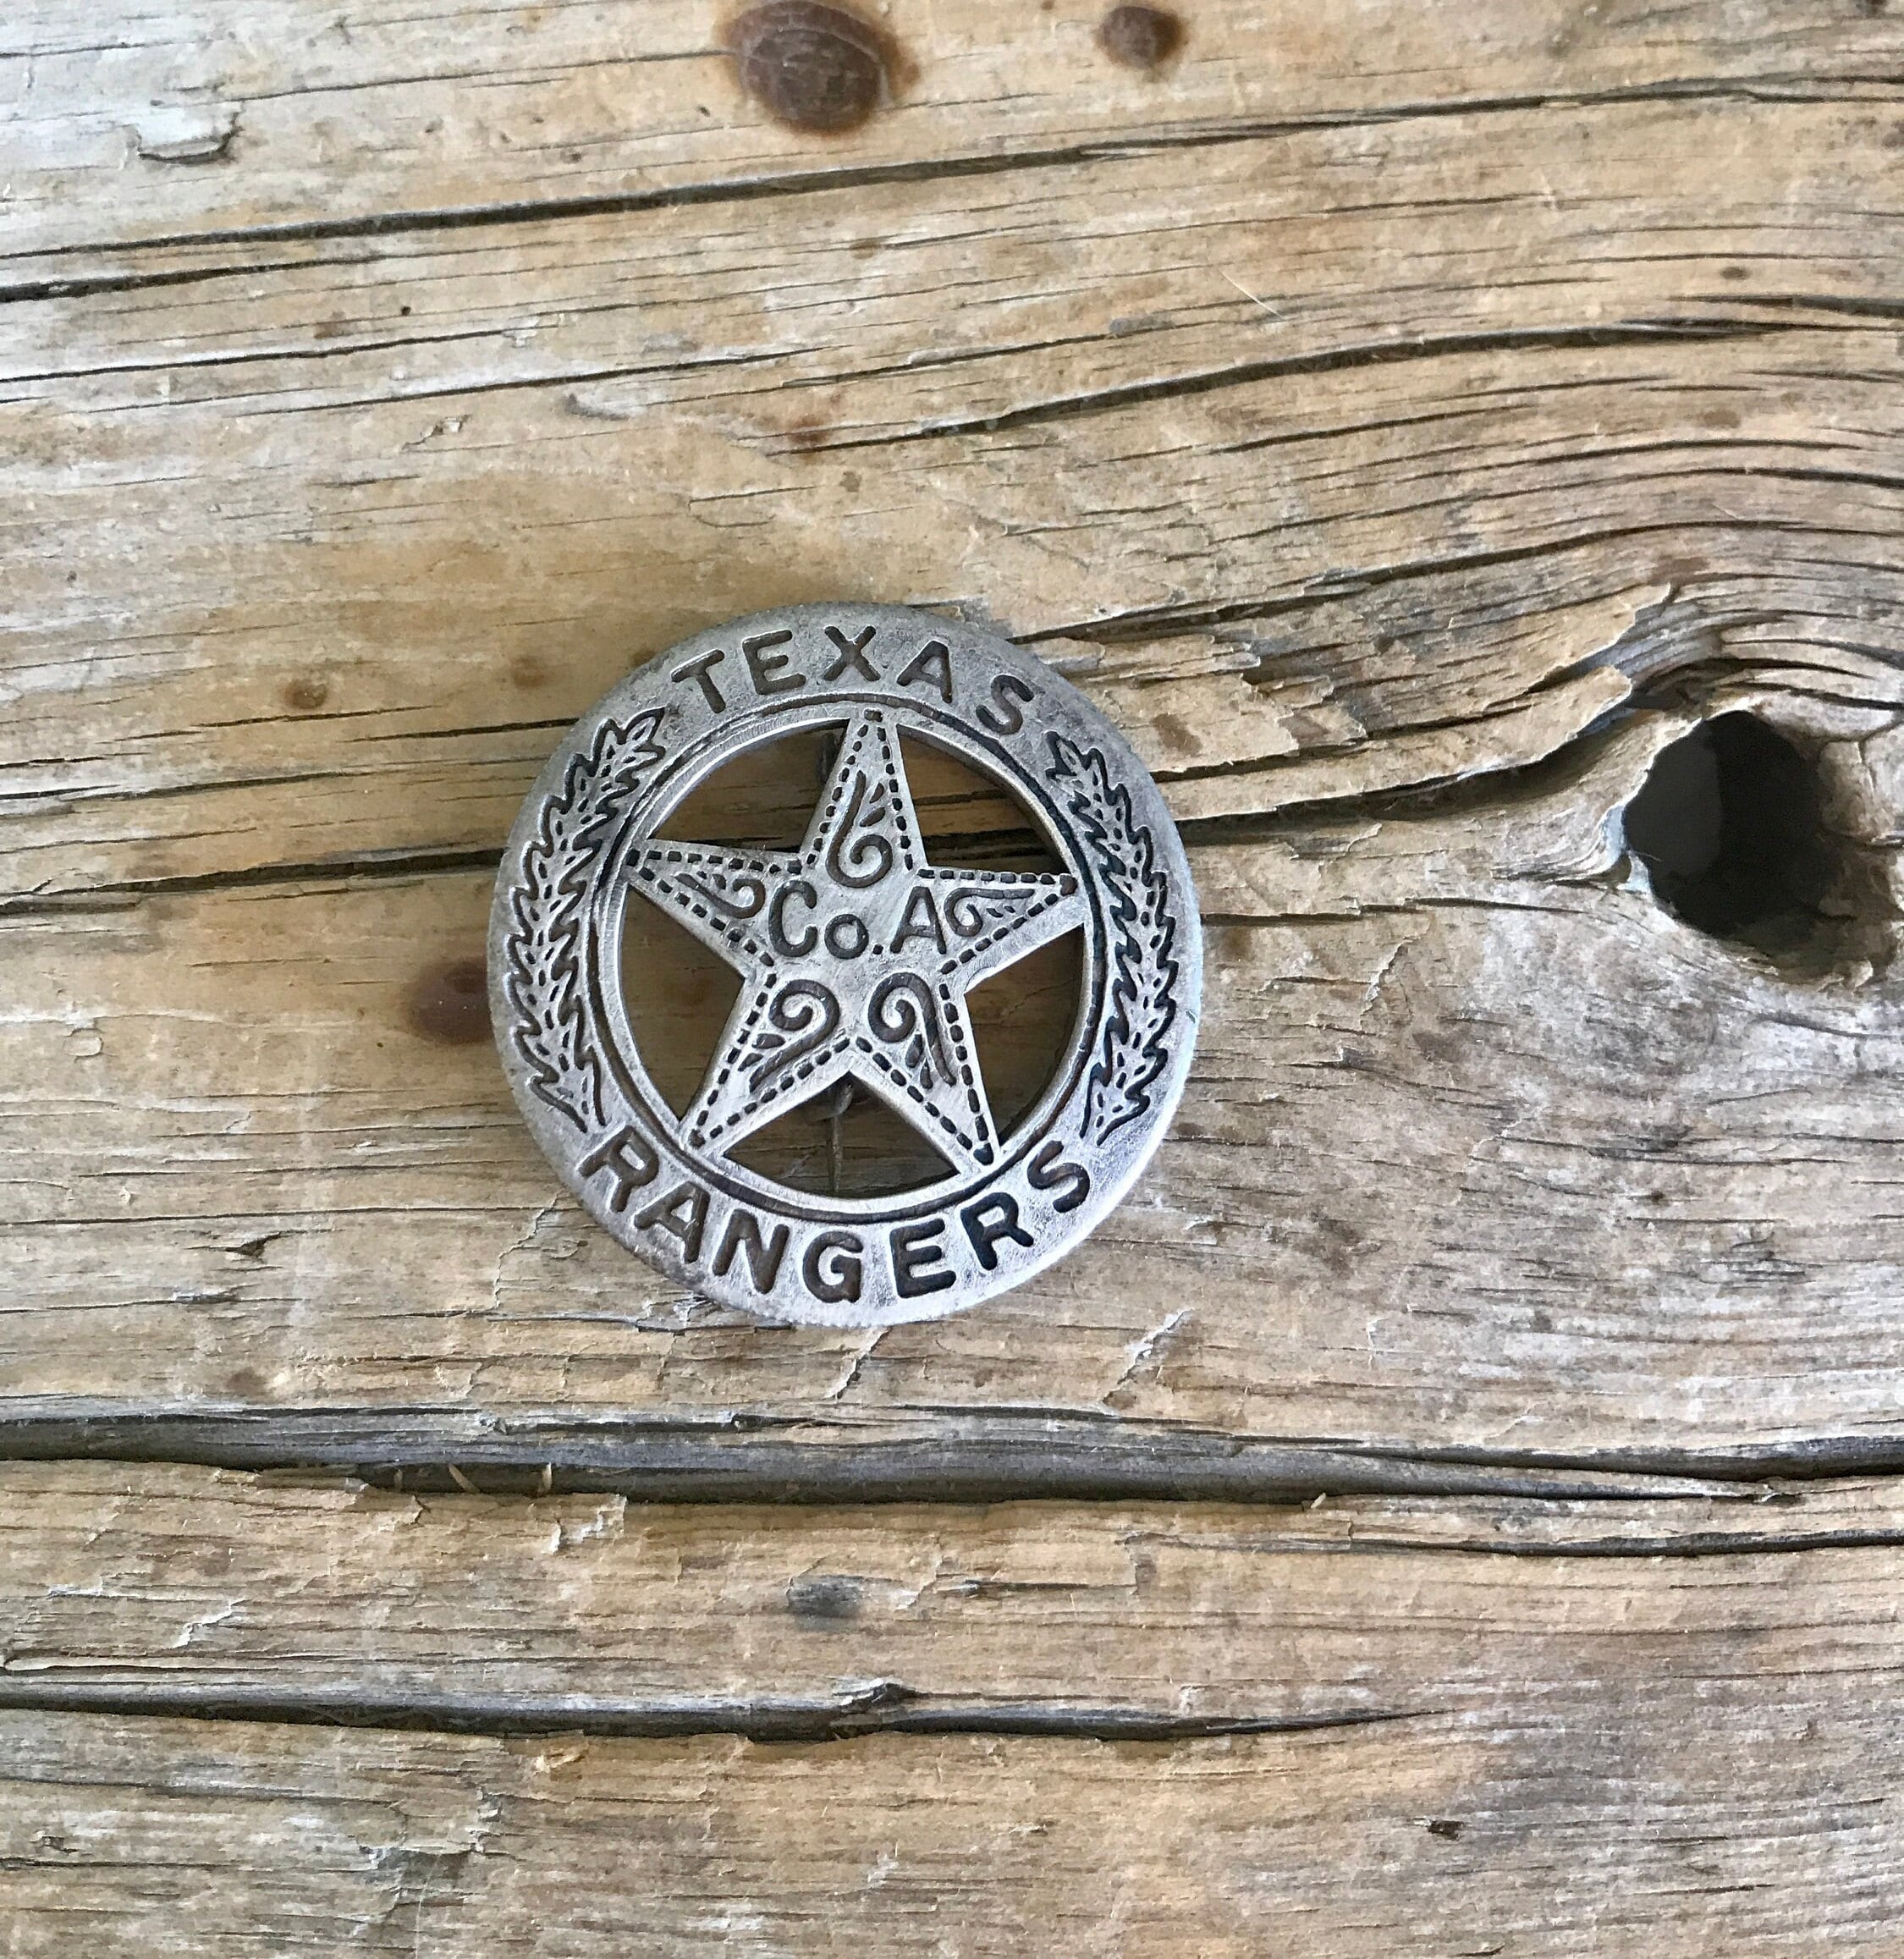 Texas Rangers Badge / Replica Pin / Mexican Peso Back / 